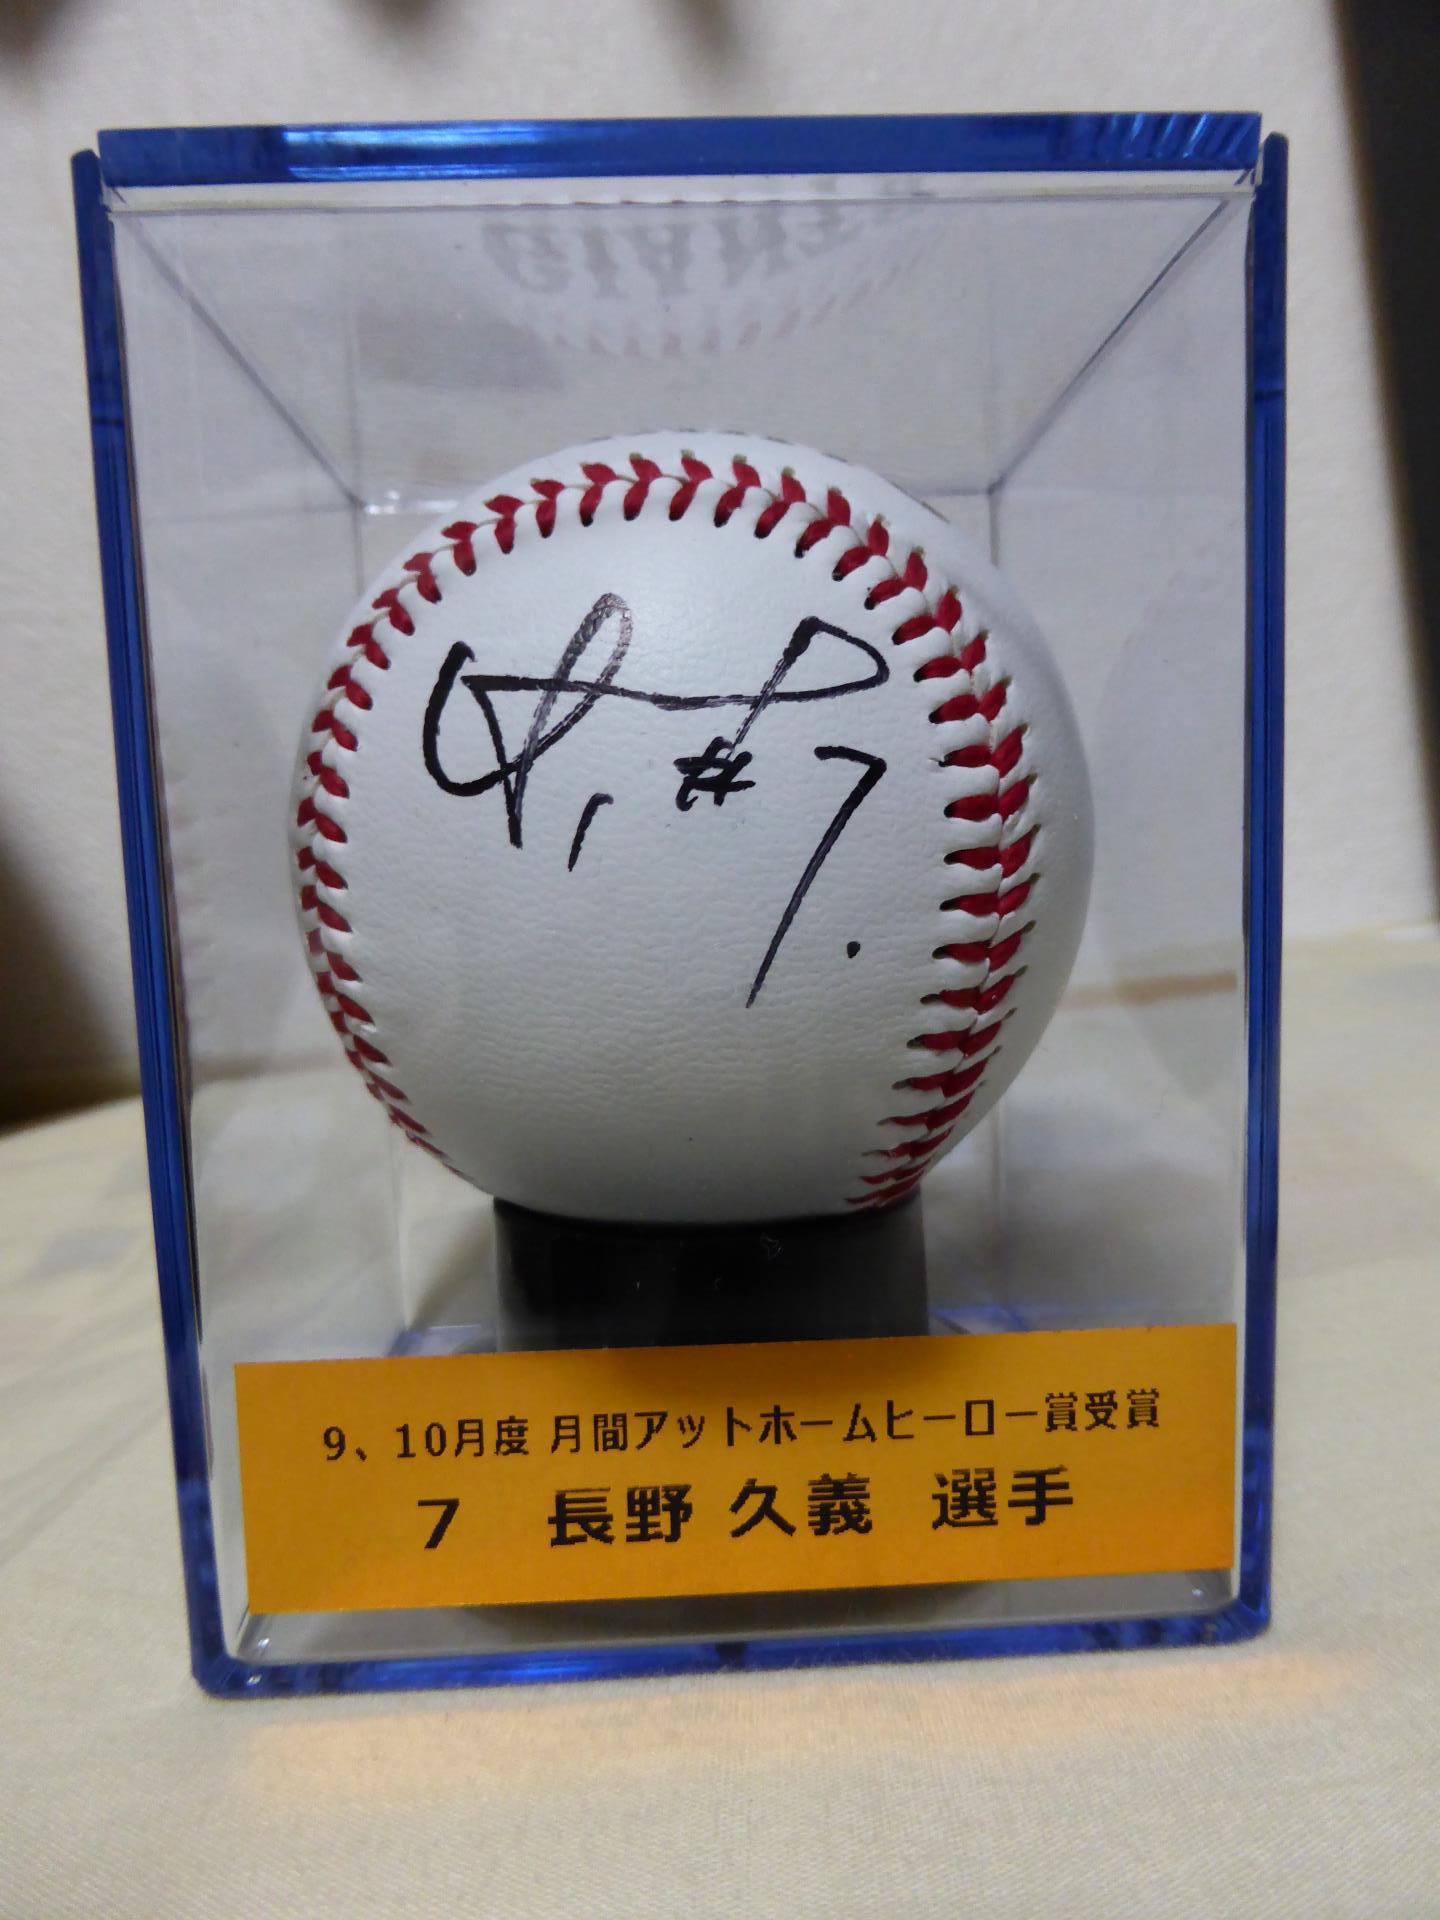 広島東洋カープ長野久義選手のレプリカサインボールです。 通販